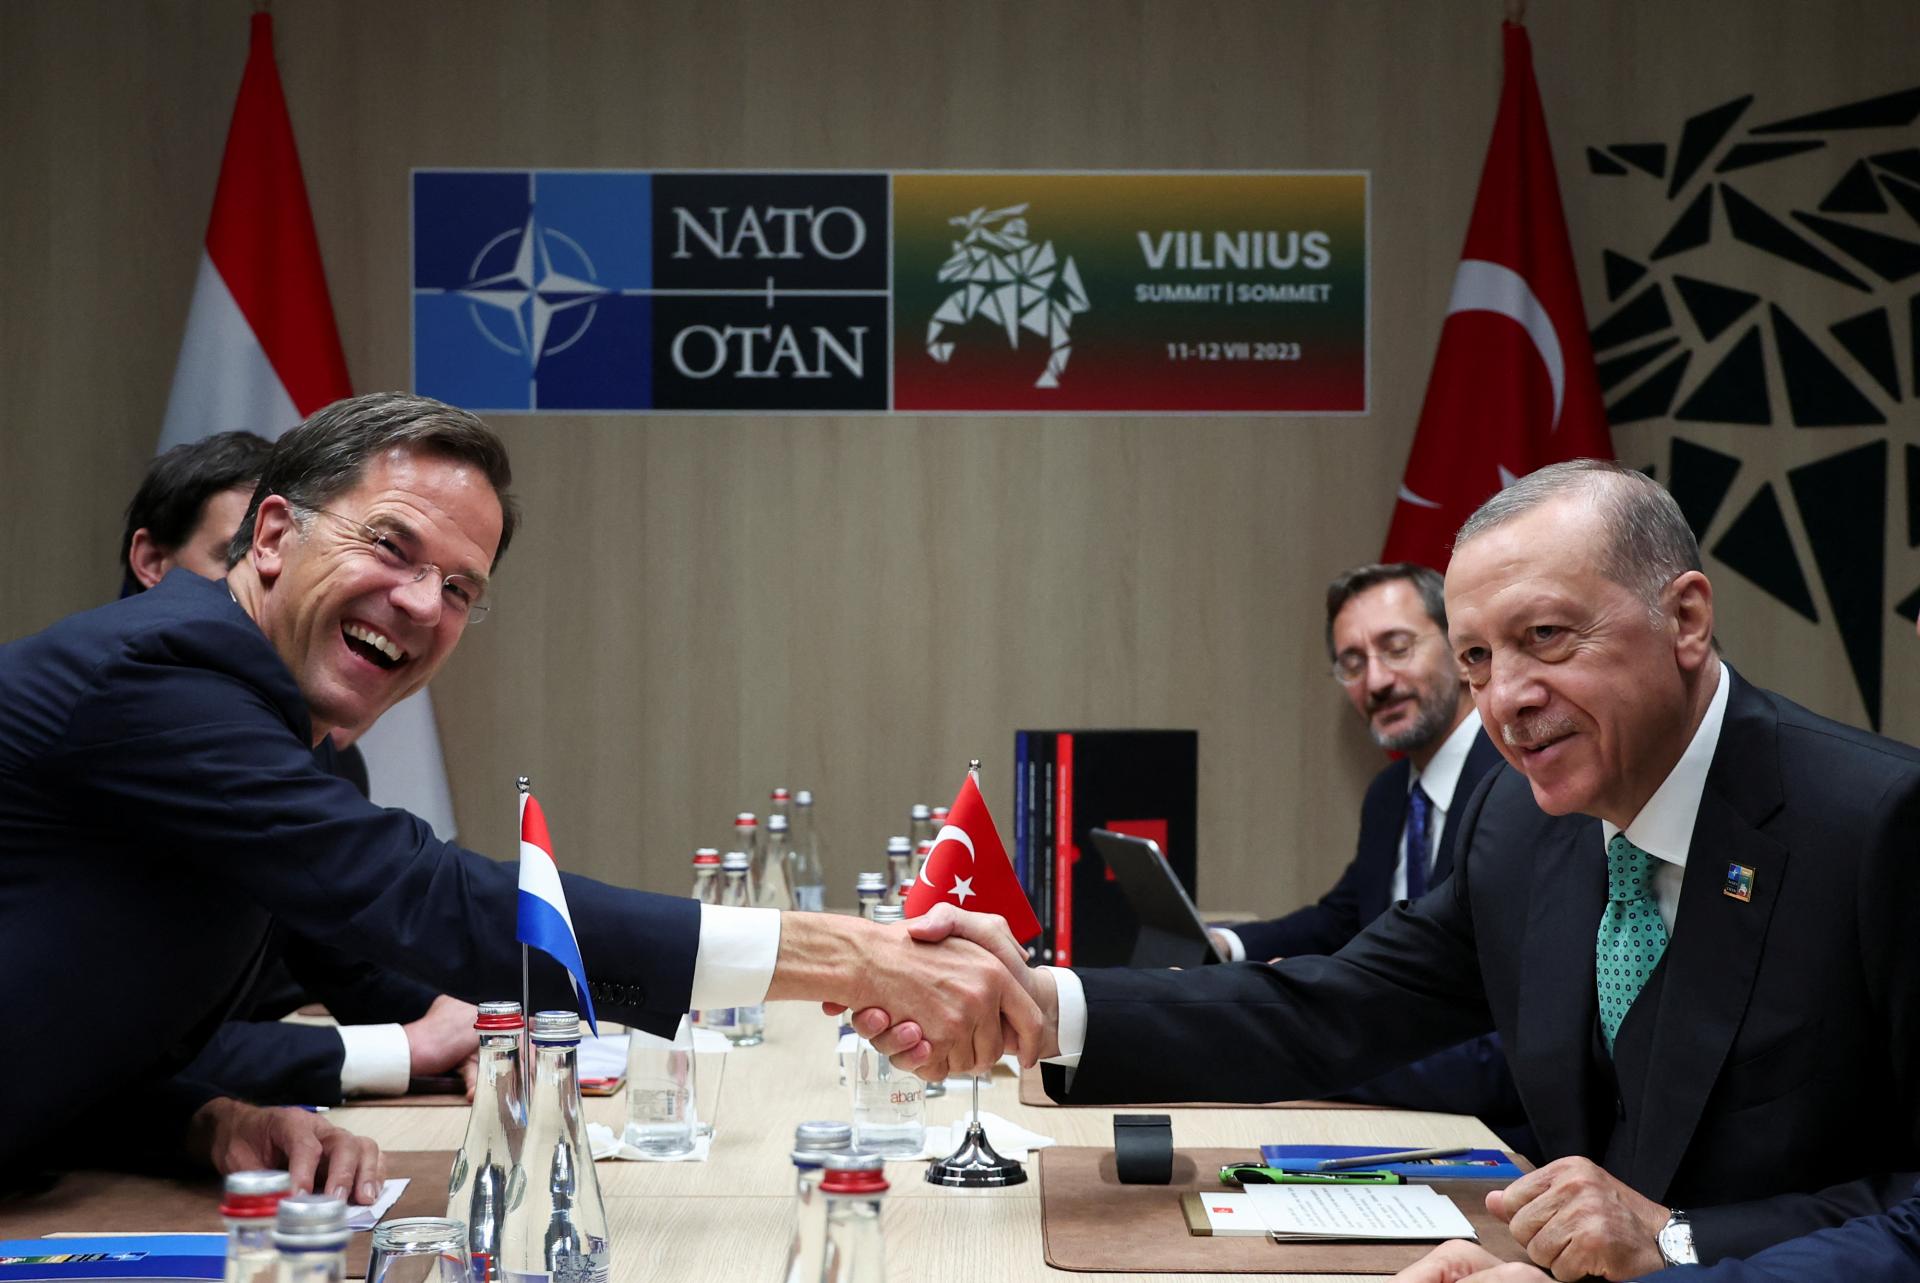 Hazardný hráč Erdogan. Riskantná hra s NATO a Putinom mu zatiaľ vychádza, staré krivdy sú odpustené